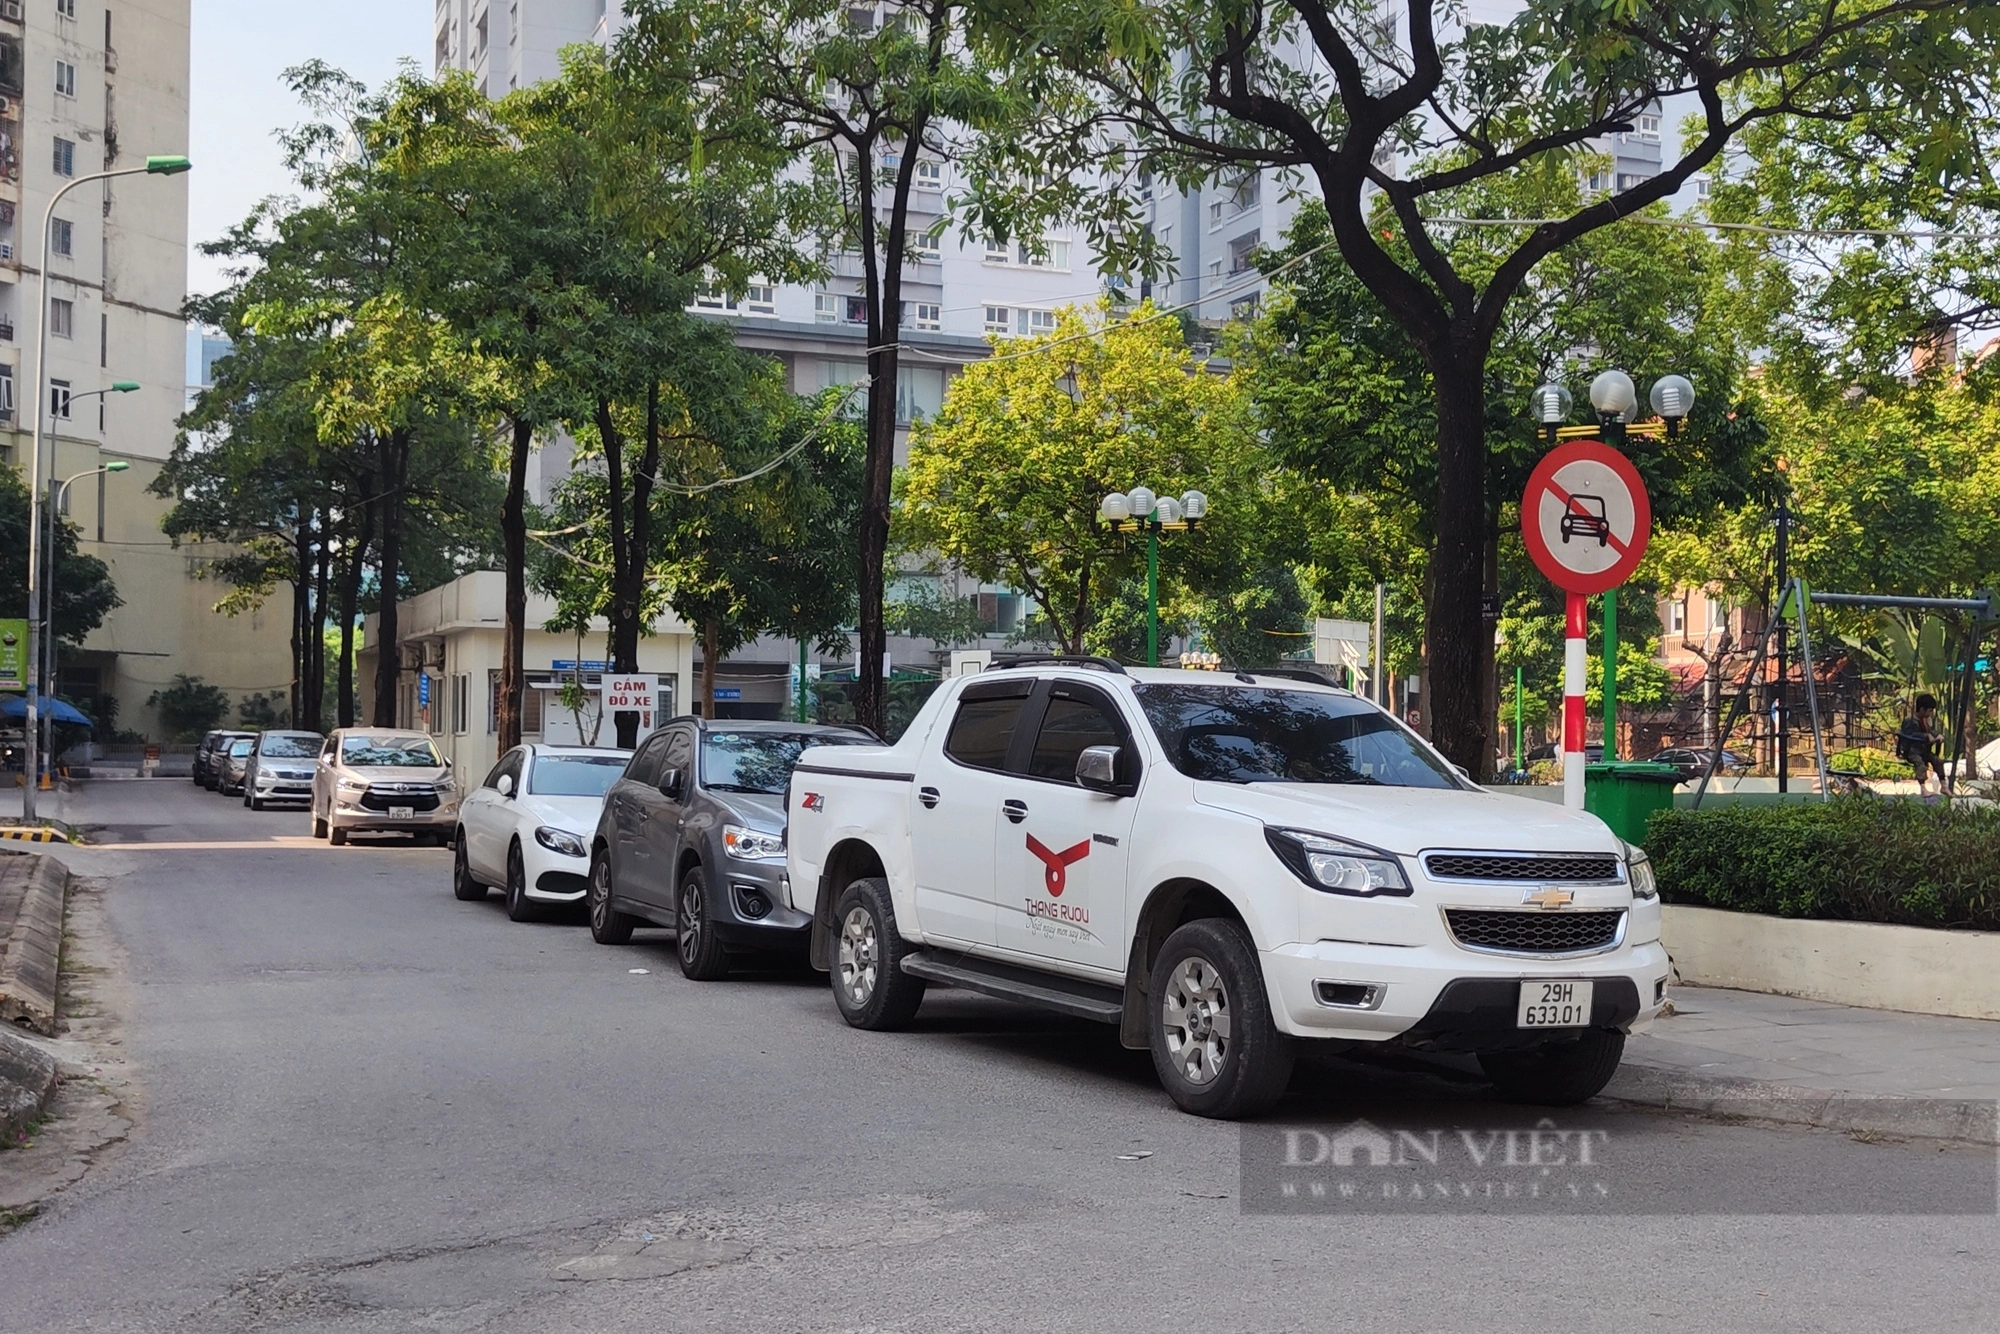 Hà Nội: Nhiều ô tô dừng, đỗ bừa bãi trong khu đô thị Yên Hoà  (Cầu Giấy) - Ảnh 4.